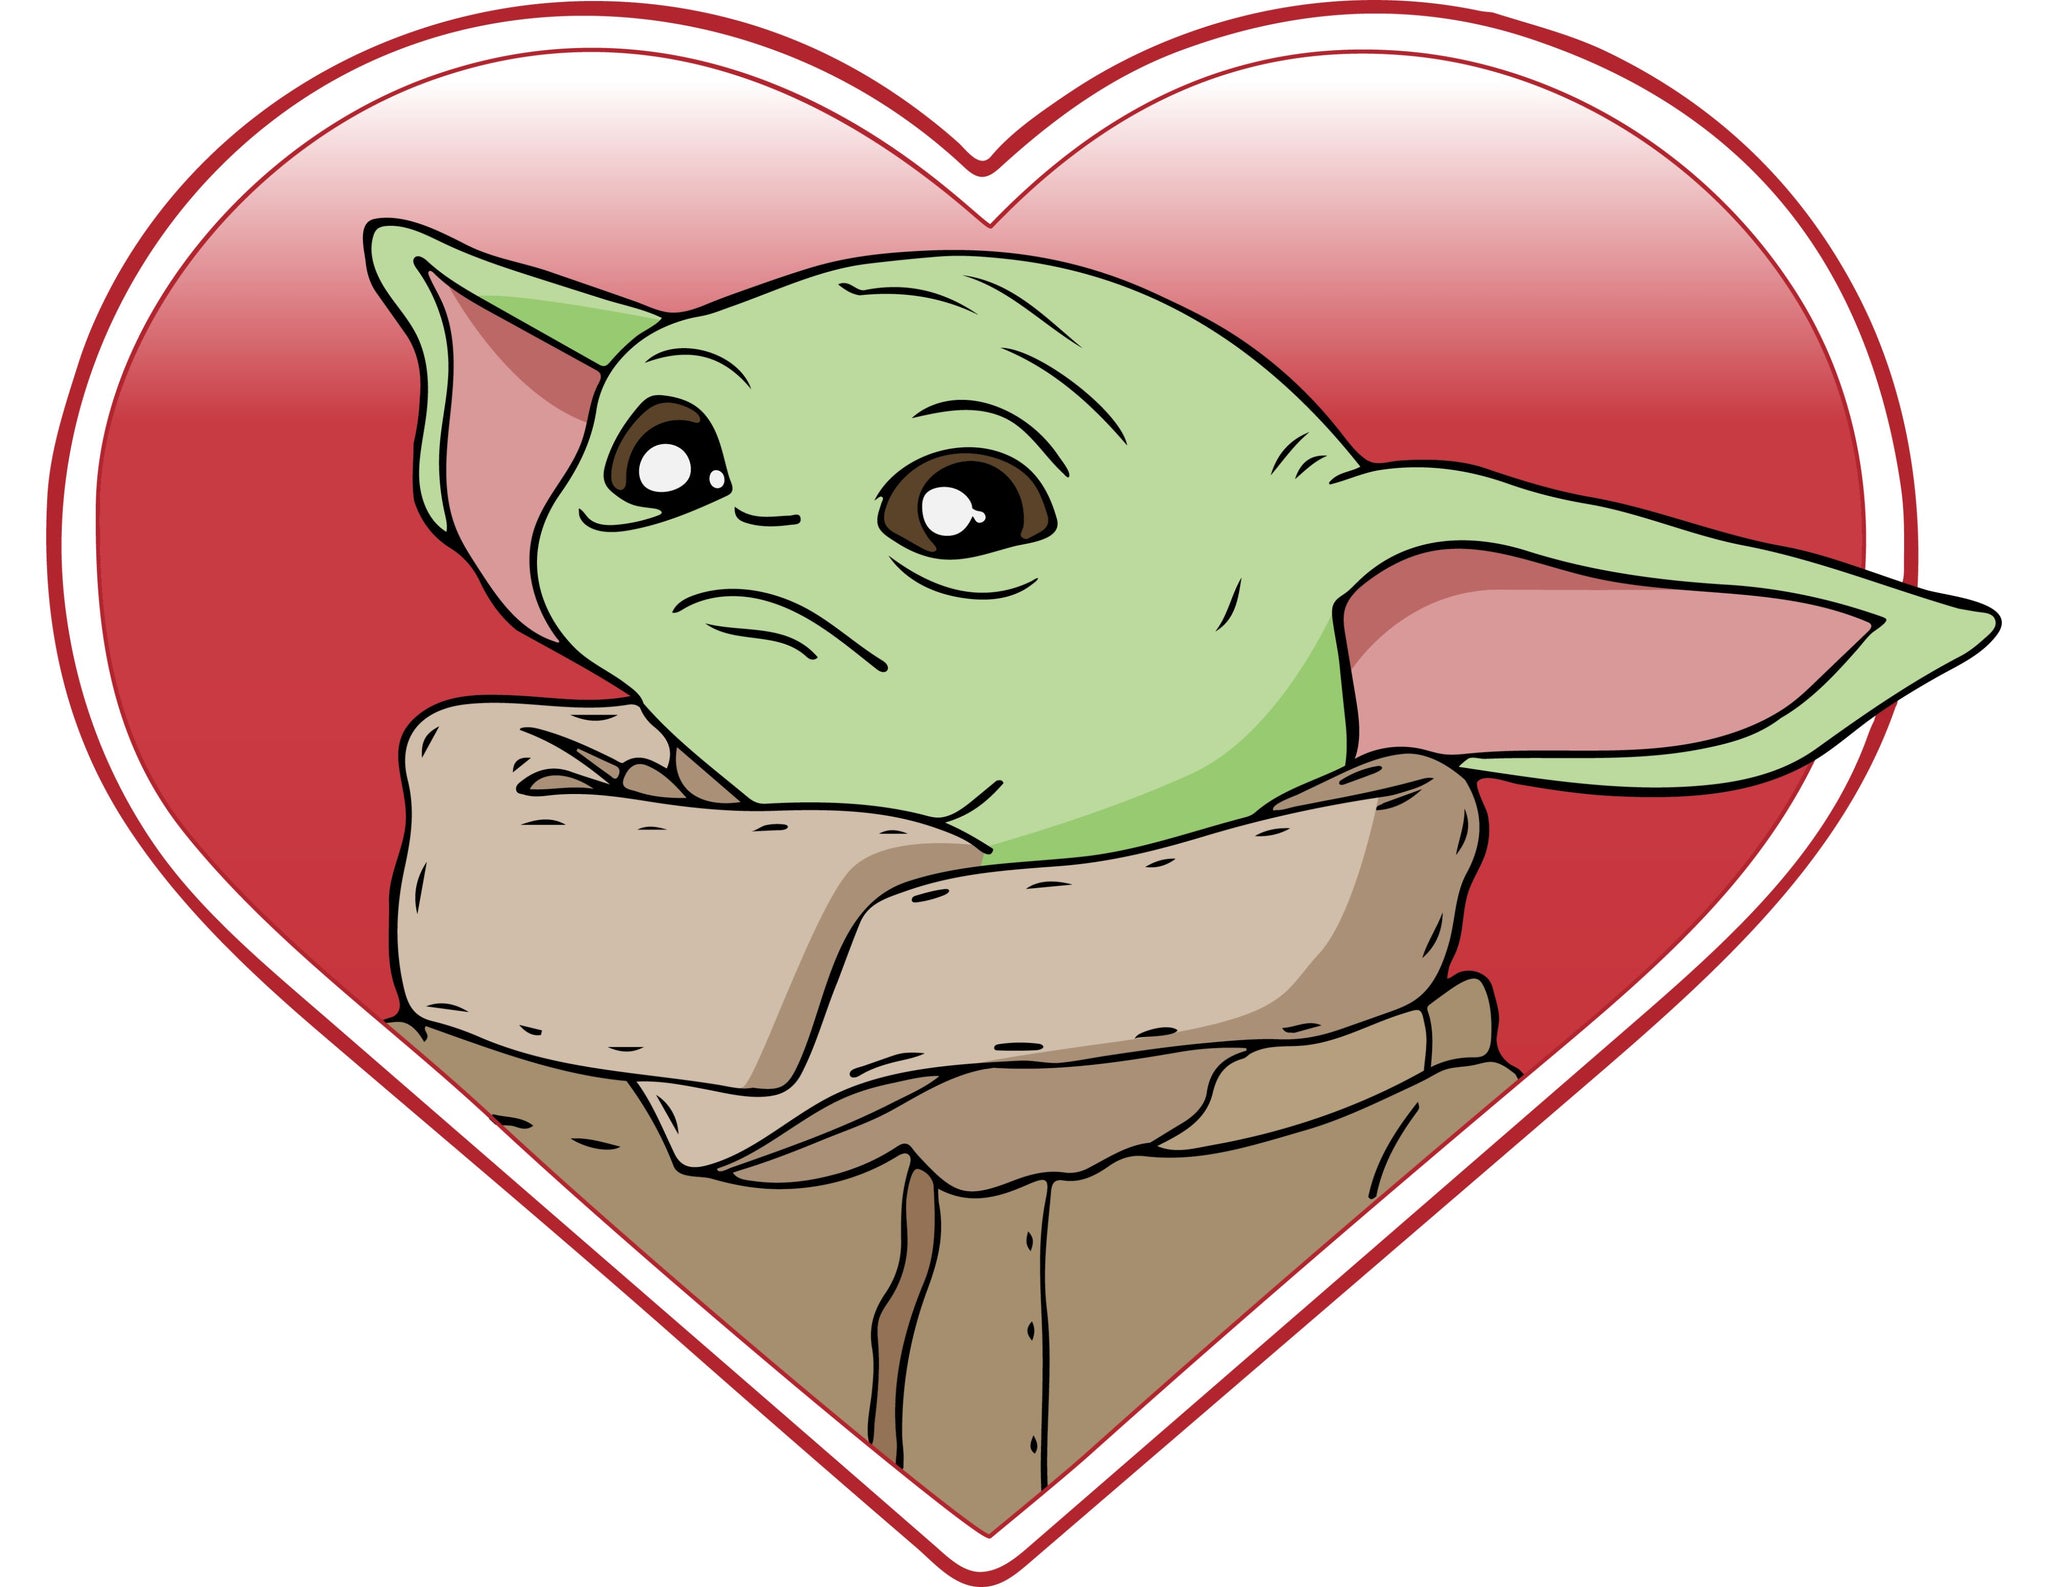 Star Wars Yoda Heart Valentine's Day SVG - Instant Download